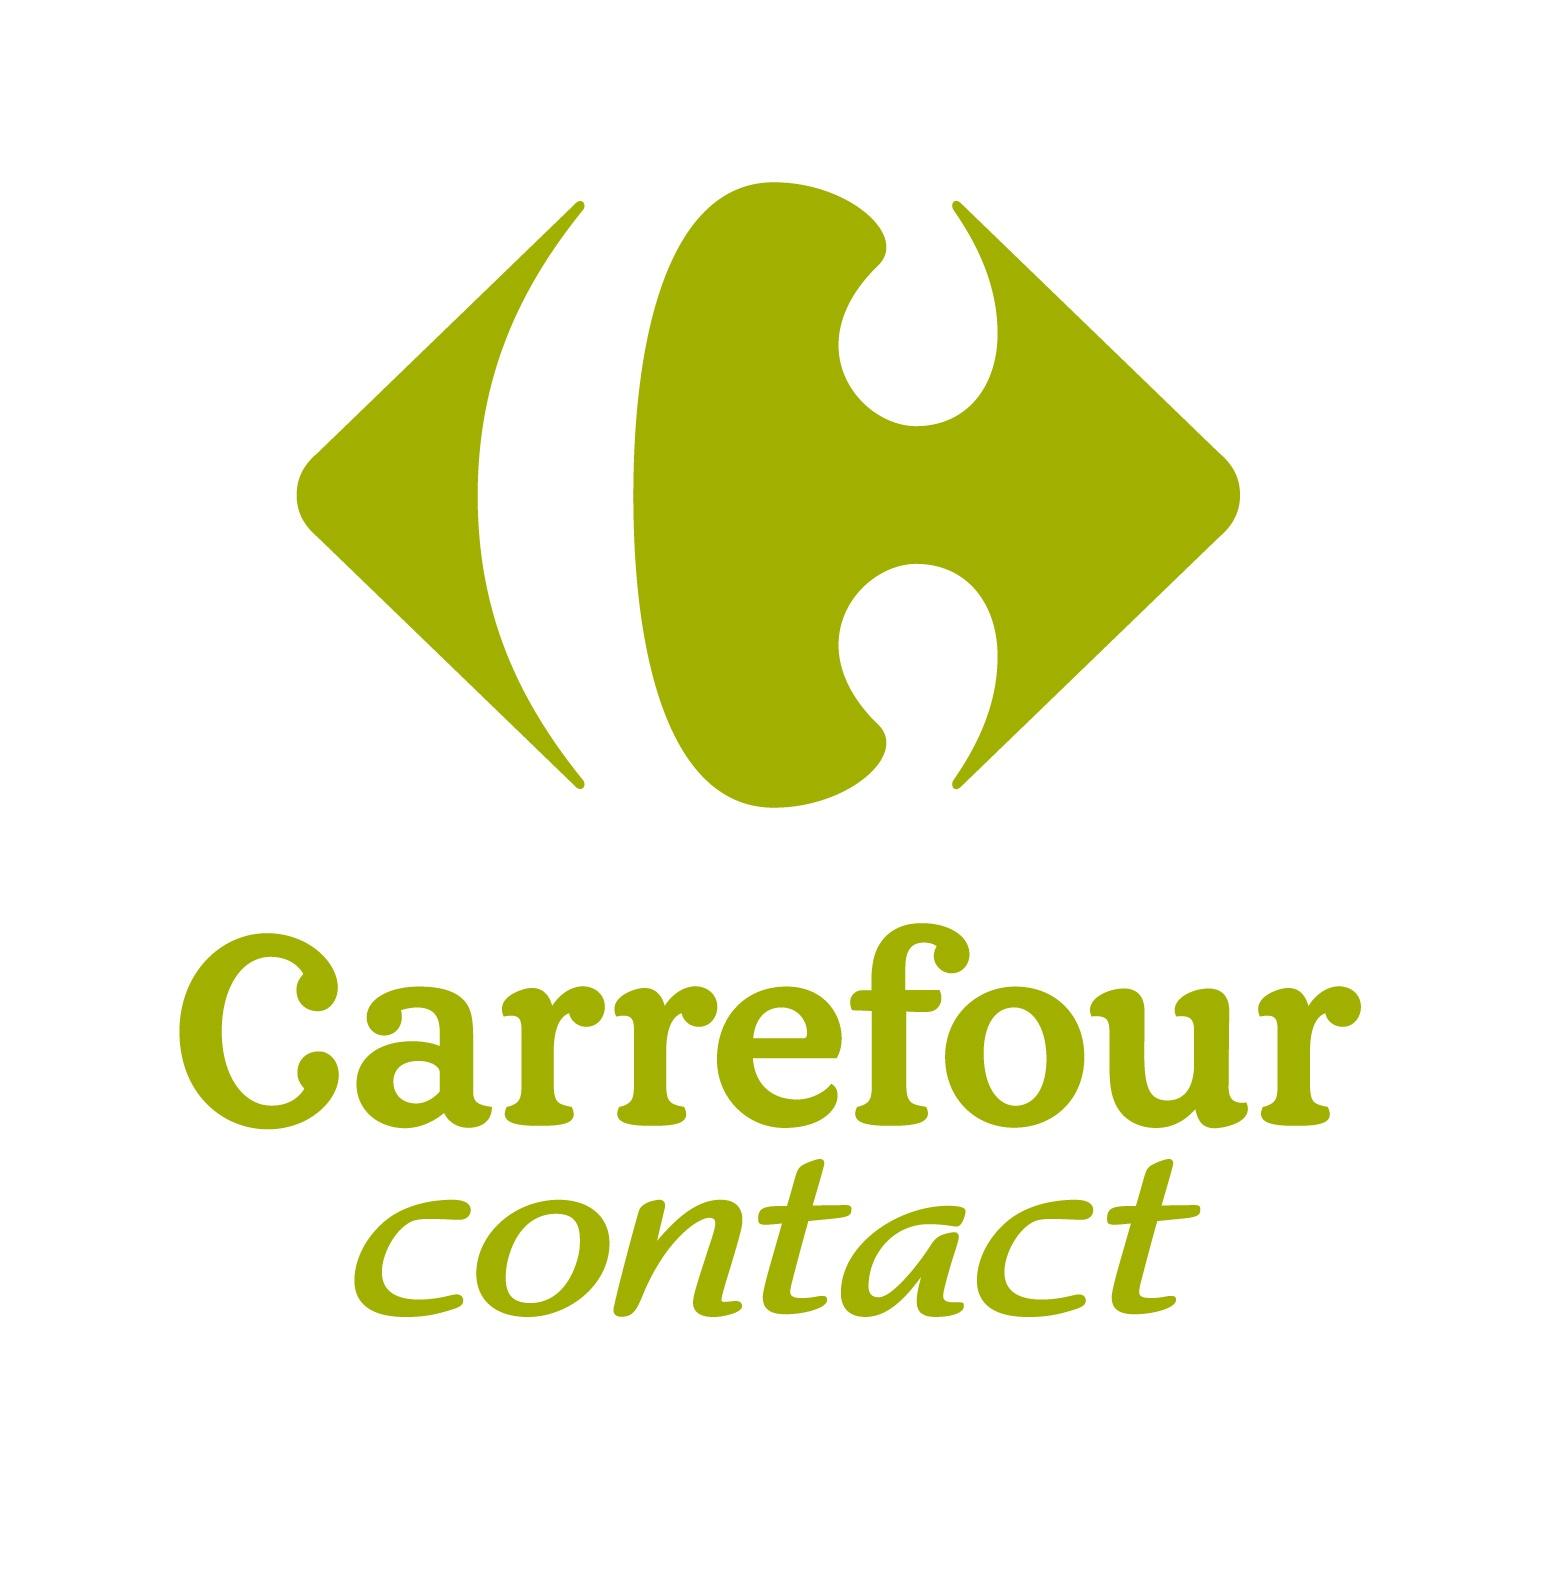 Carrefour Contact Bohain En Vermandois